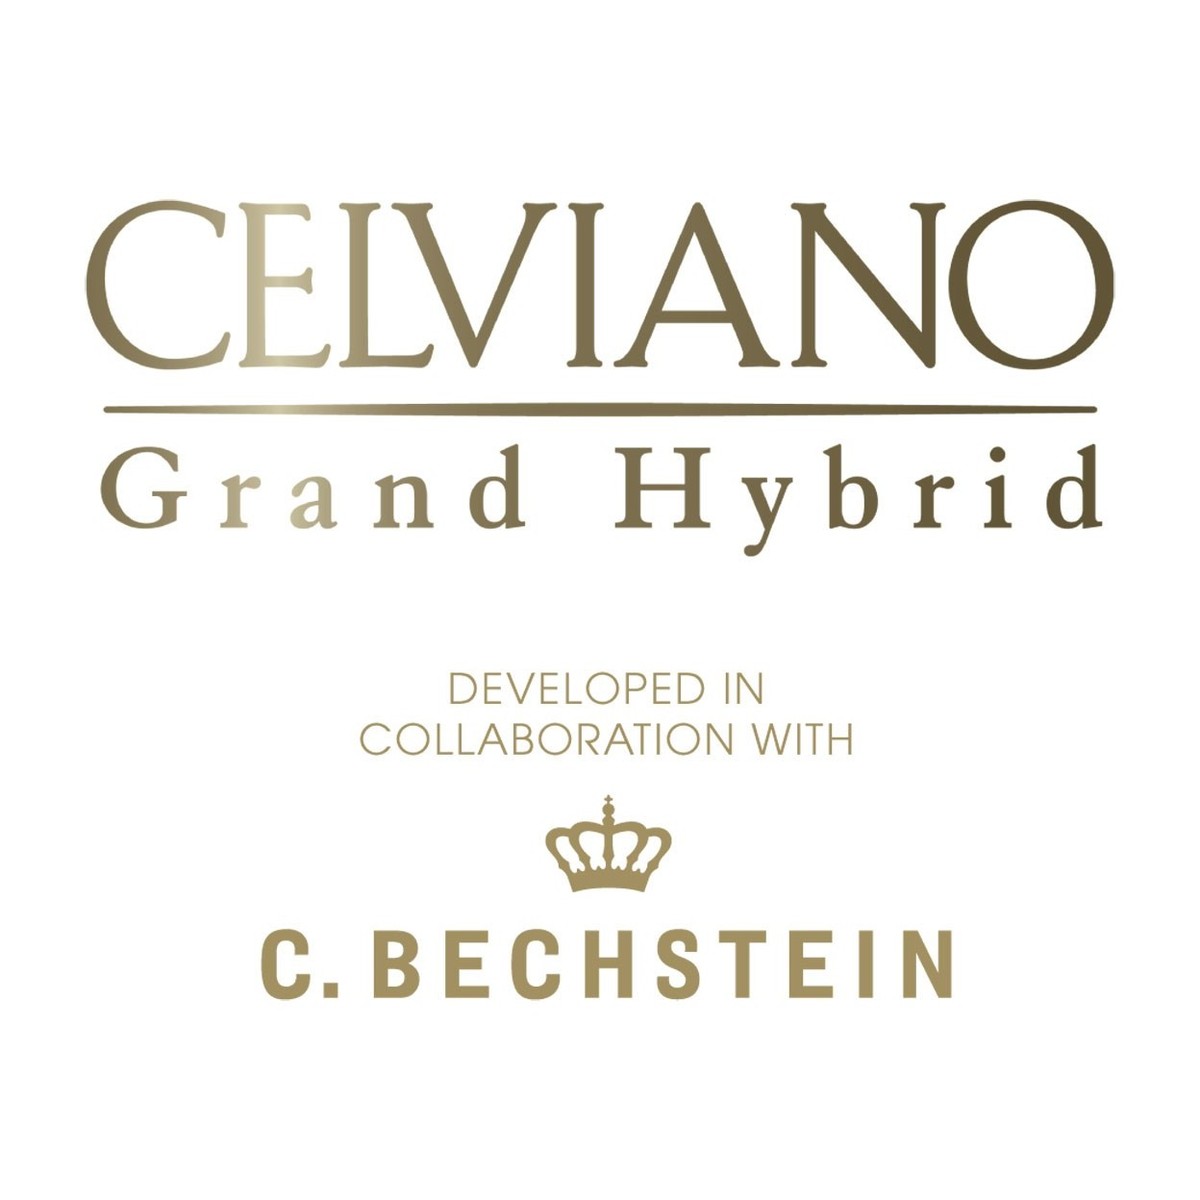 Celviano Grand hybrid C. Bechstein logo